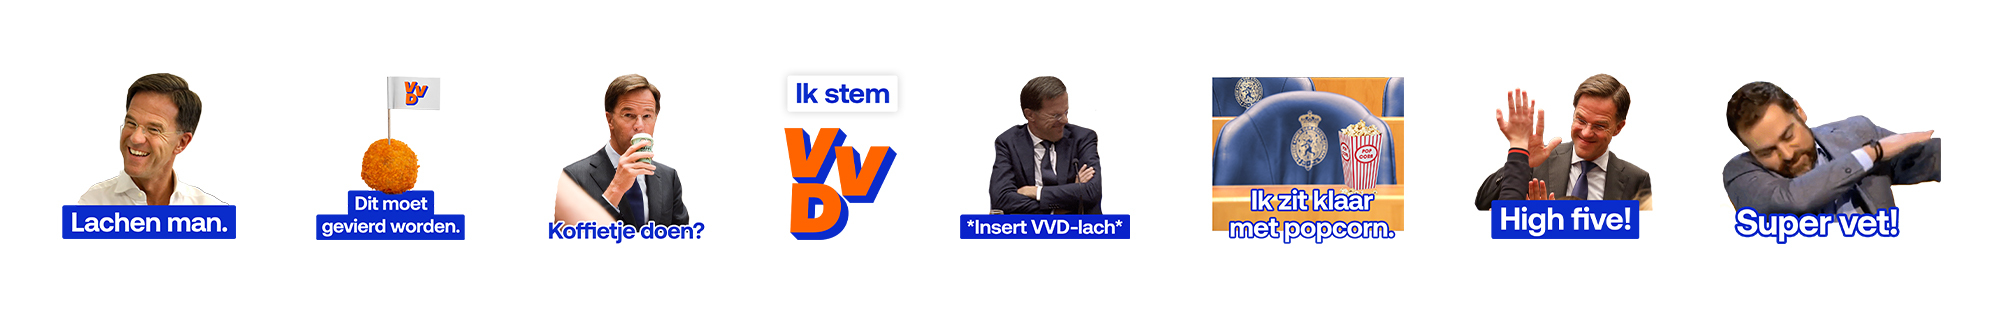 Campagne-downloads VVD. 19